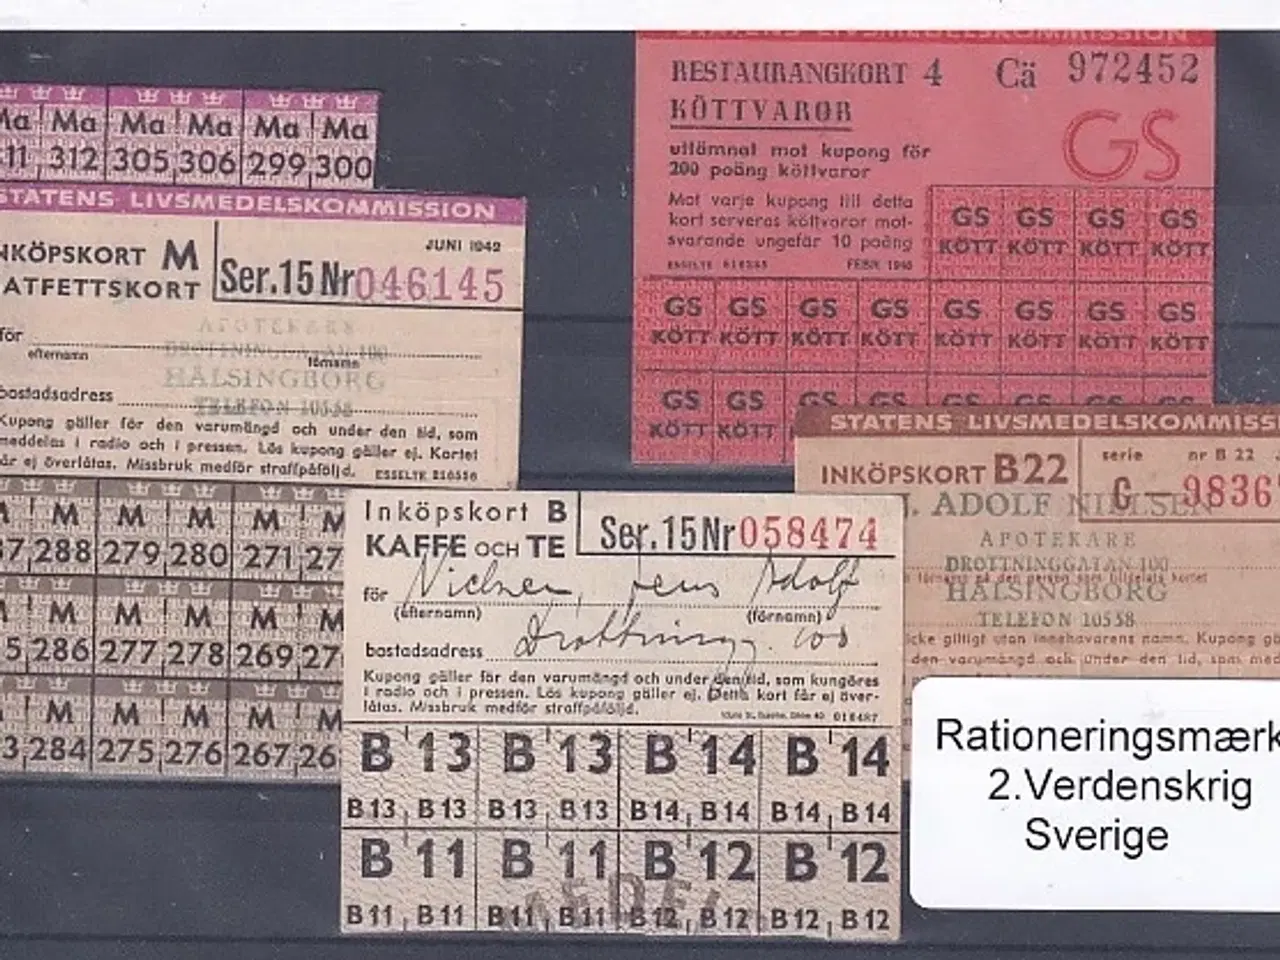 Billede 1 - Rationeringsmærker - 2. Verdenskrig - Sverige